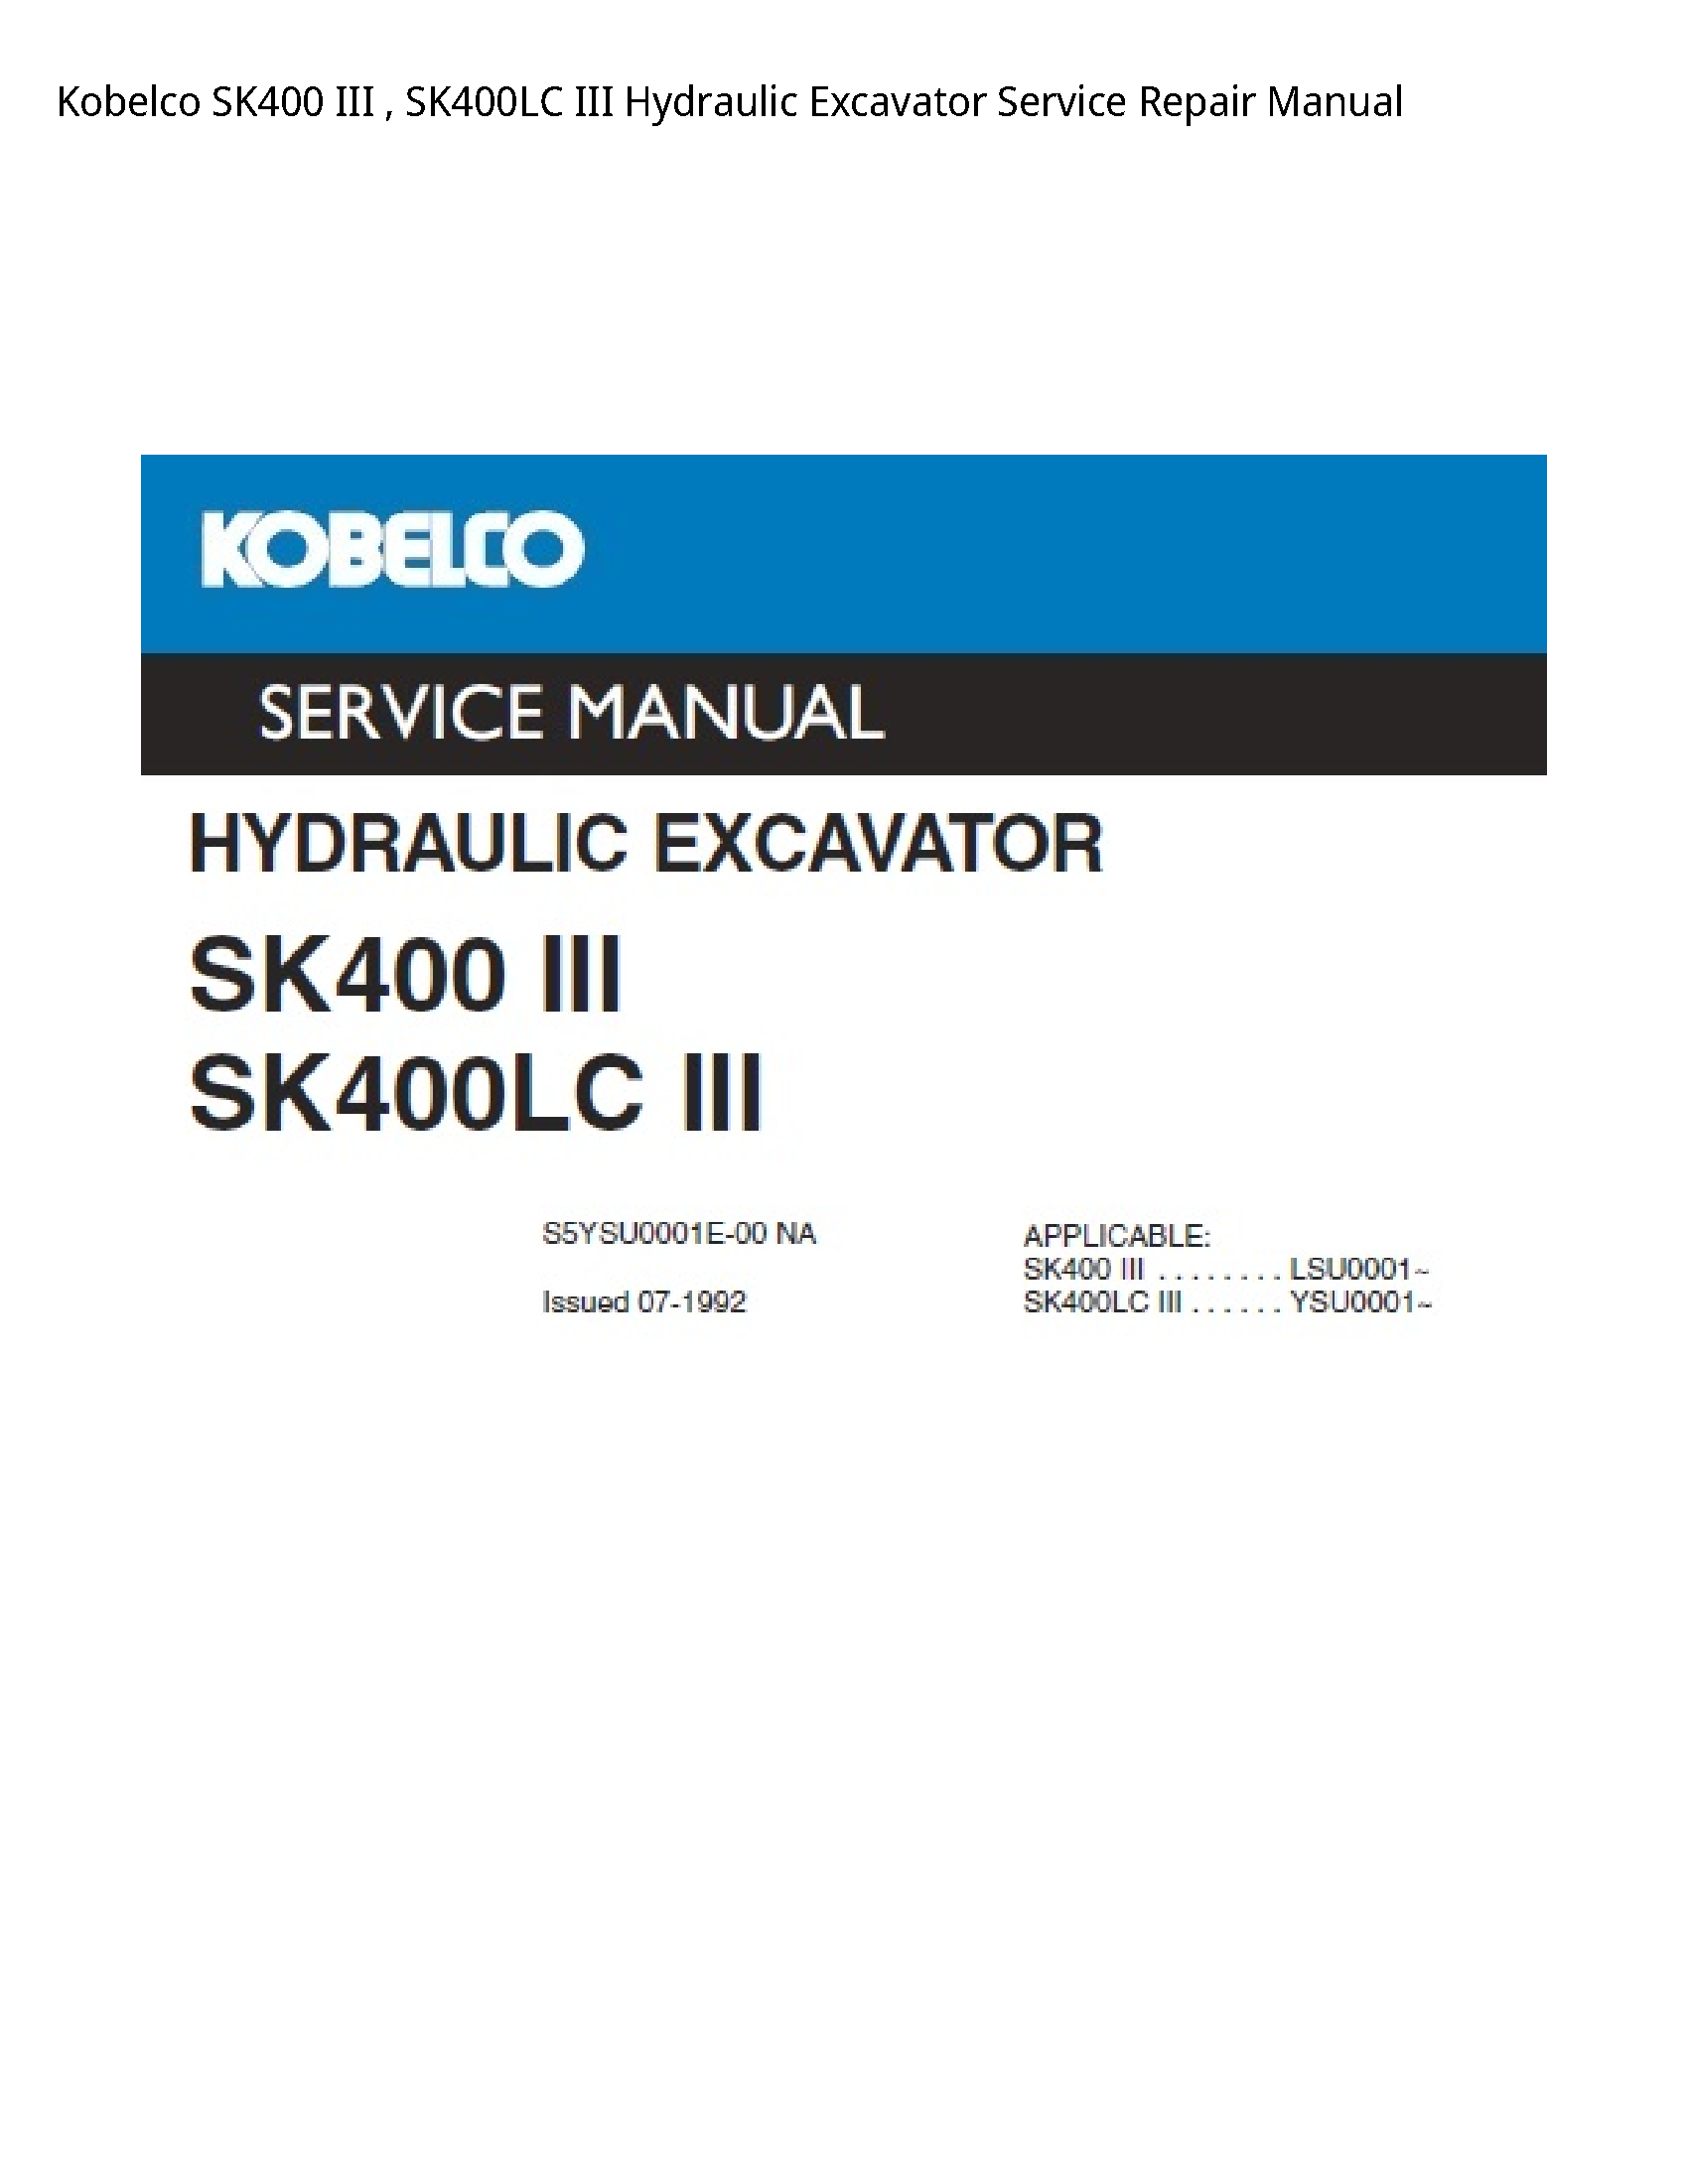 Kobelco SK400 III III Hydraulic Excavator manual